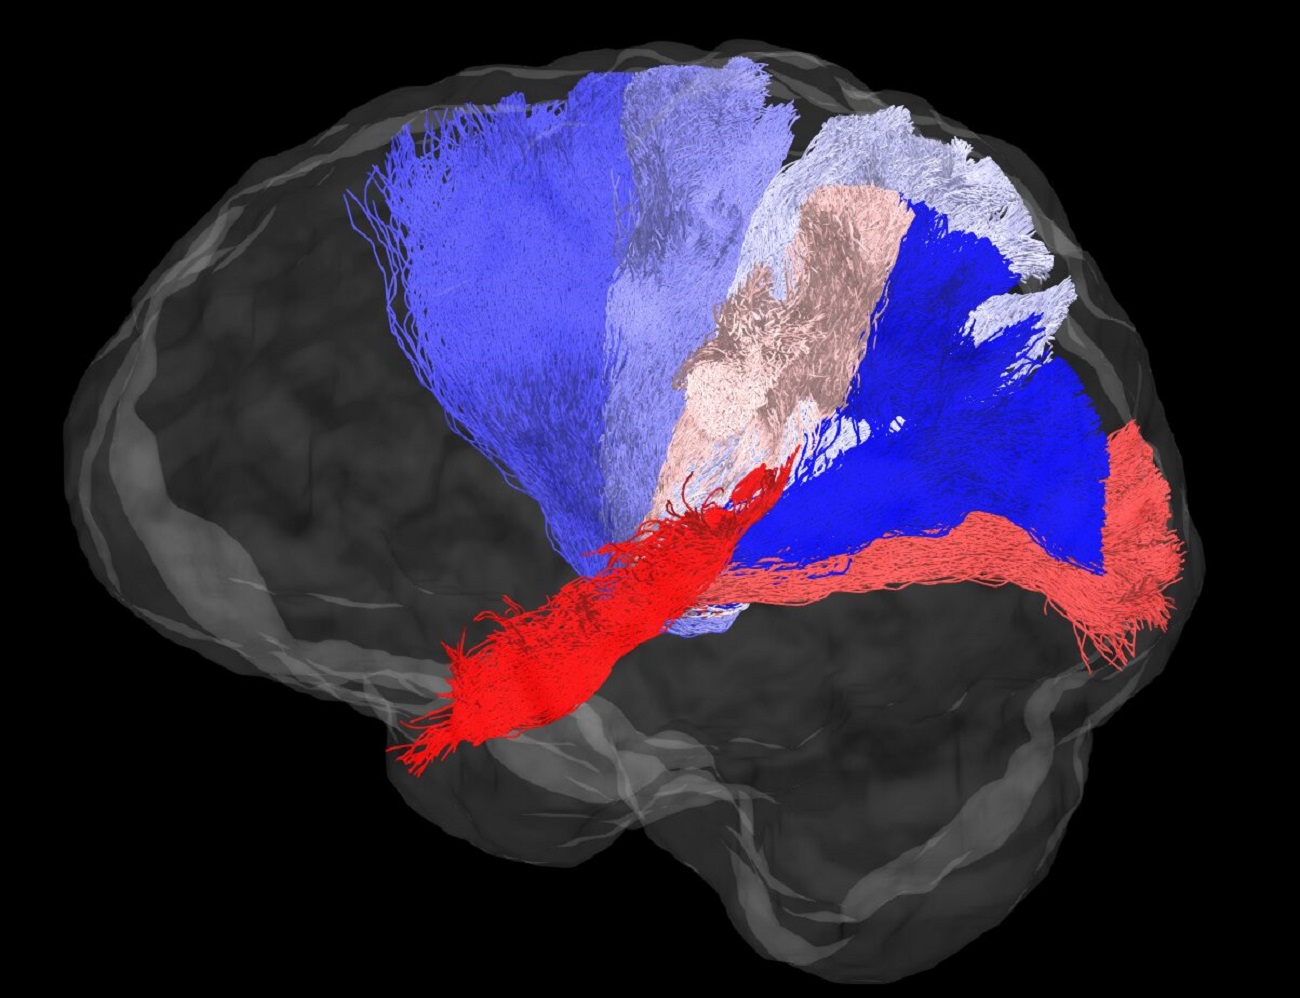 Aż trudno uwierzyć, w jaki sposób naukowcy oceniają połączenia w ludzkim mózgu